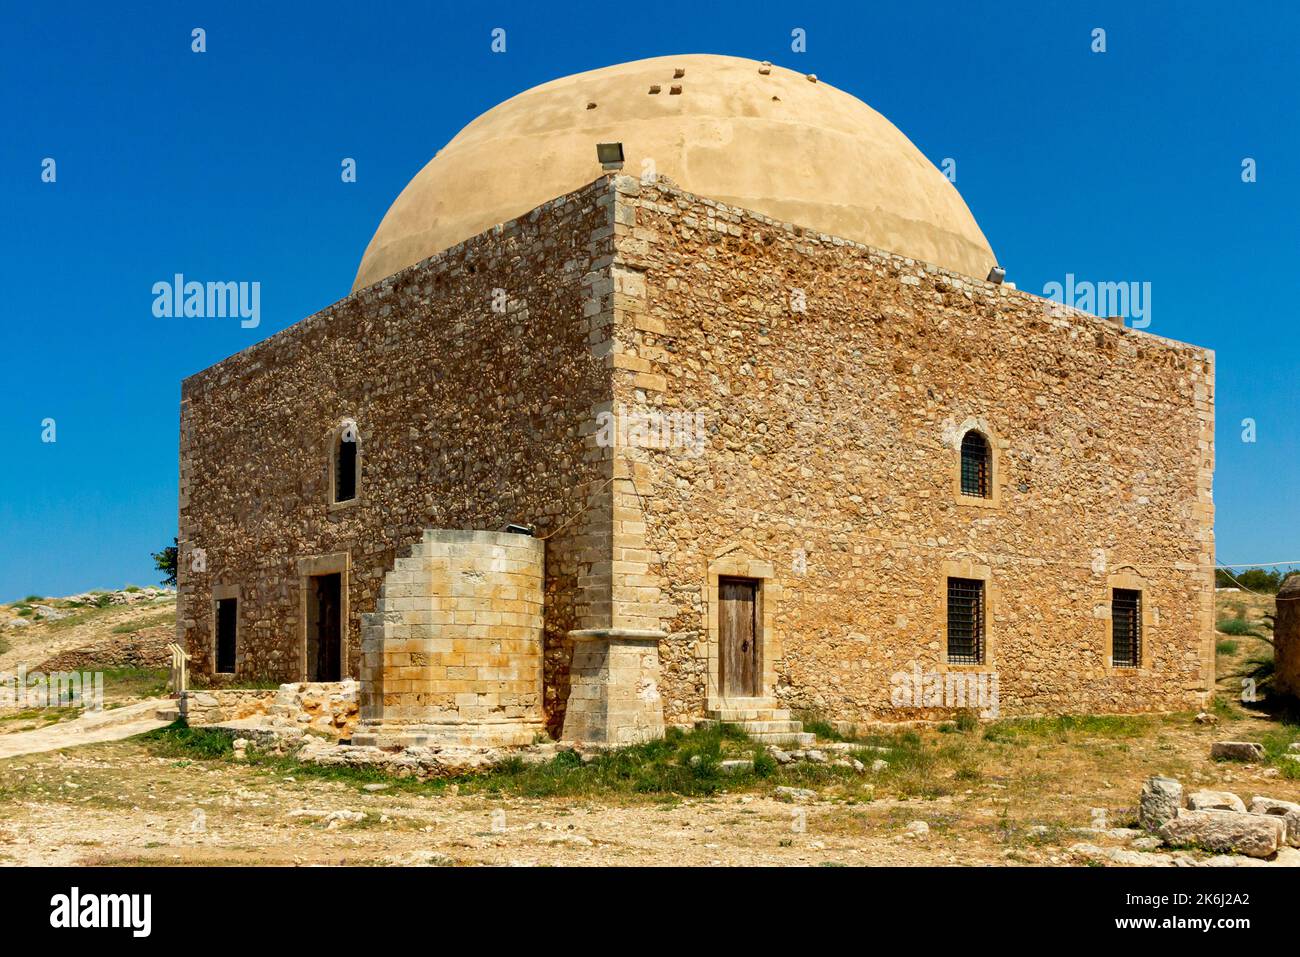 Mosquée du Sultan Ibraham Khan à la forteresse de Fortezza à Rethymnon Crète Grèce construite au 16th siècle par les Vénitiens. Banque D'Images